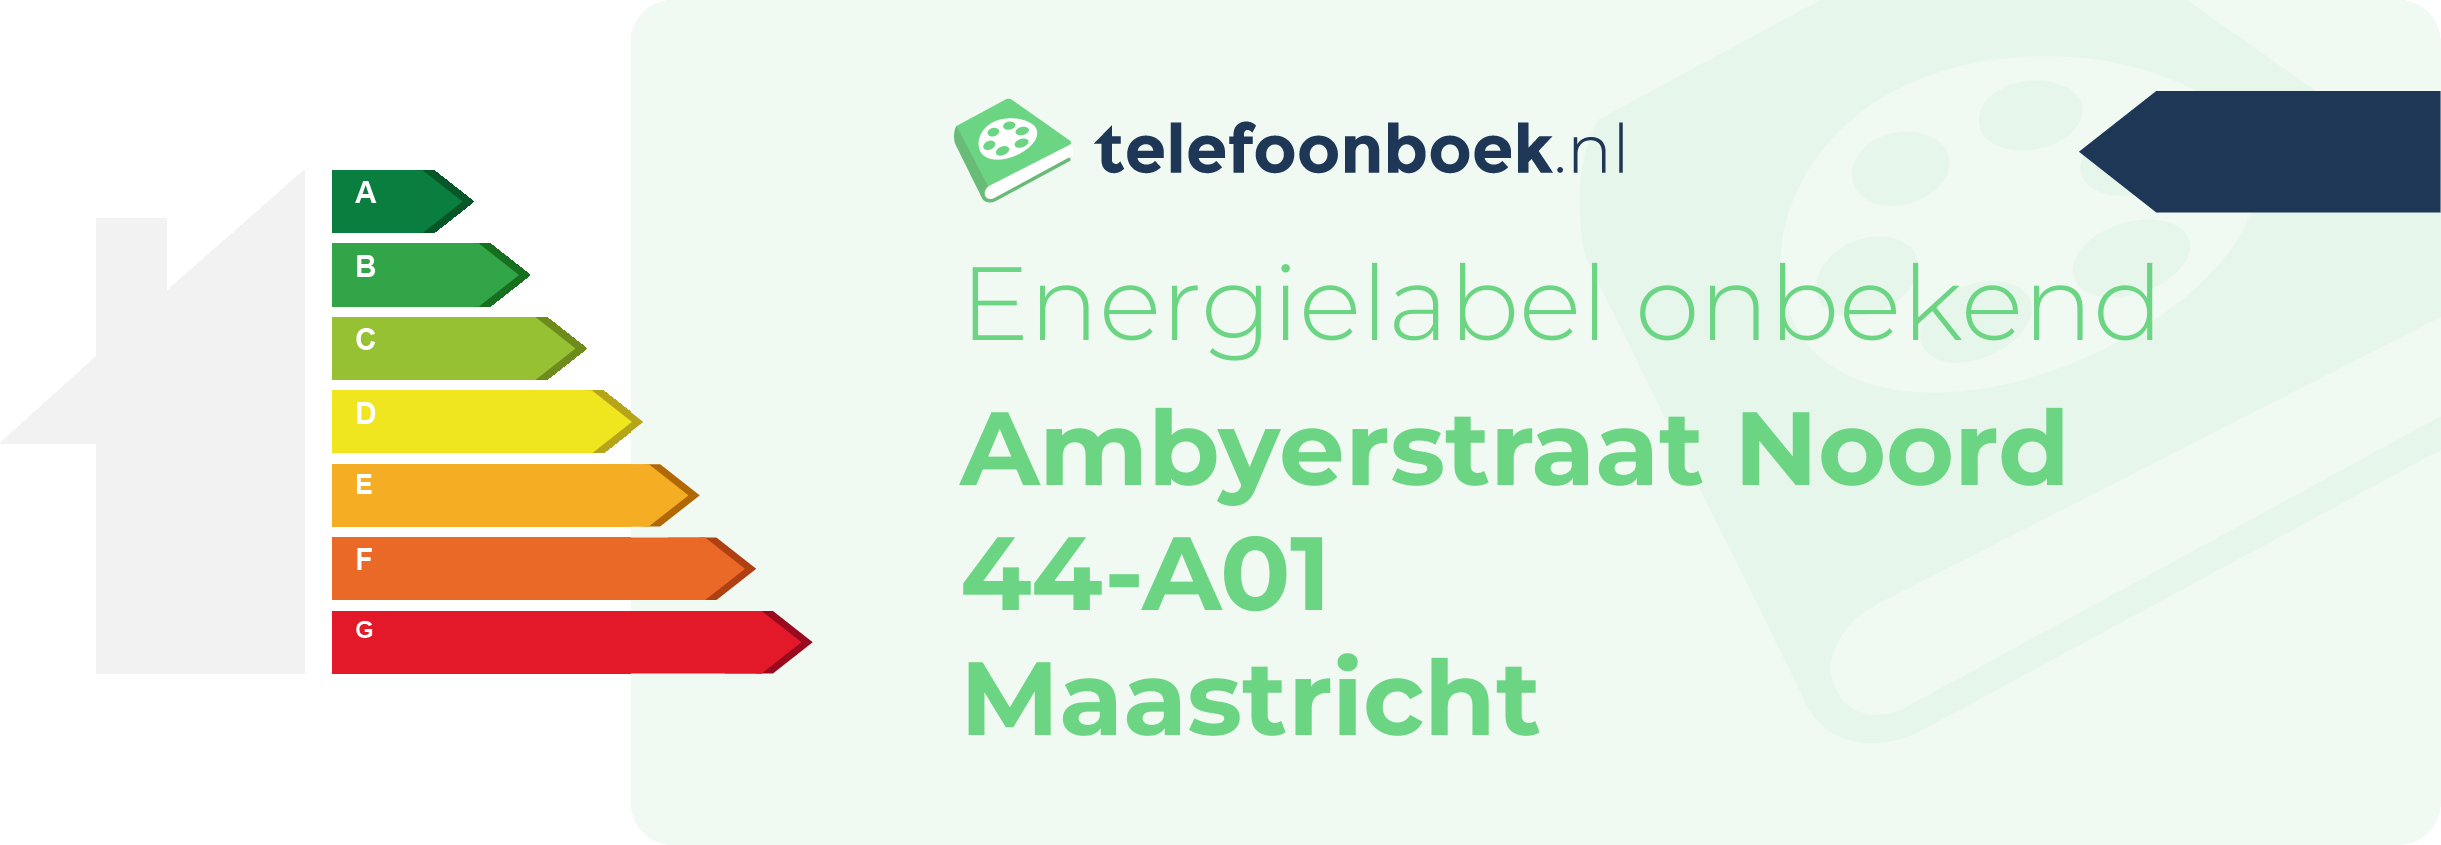 Energielabel Ambyerstraat Noord 44-A01 Maastricht